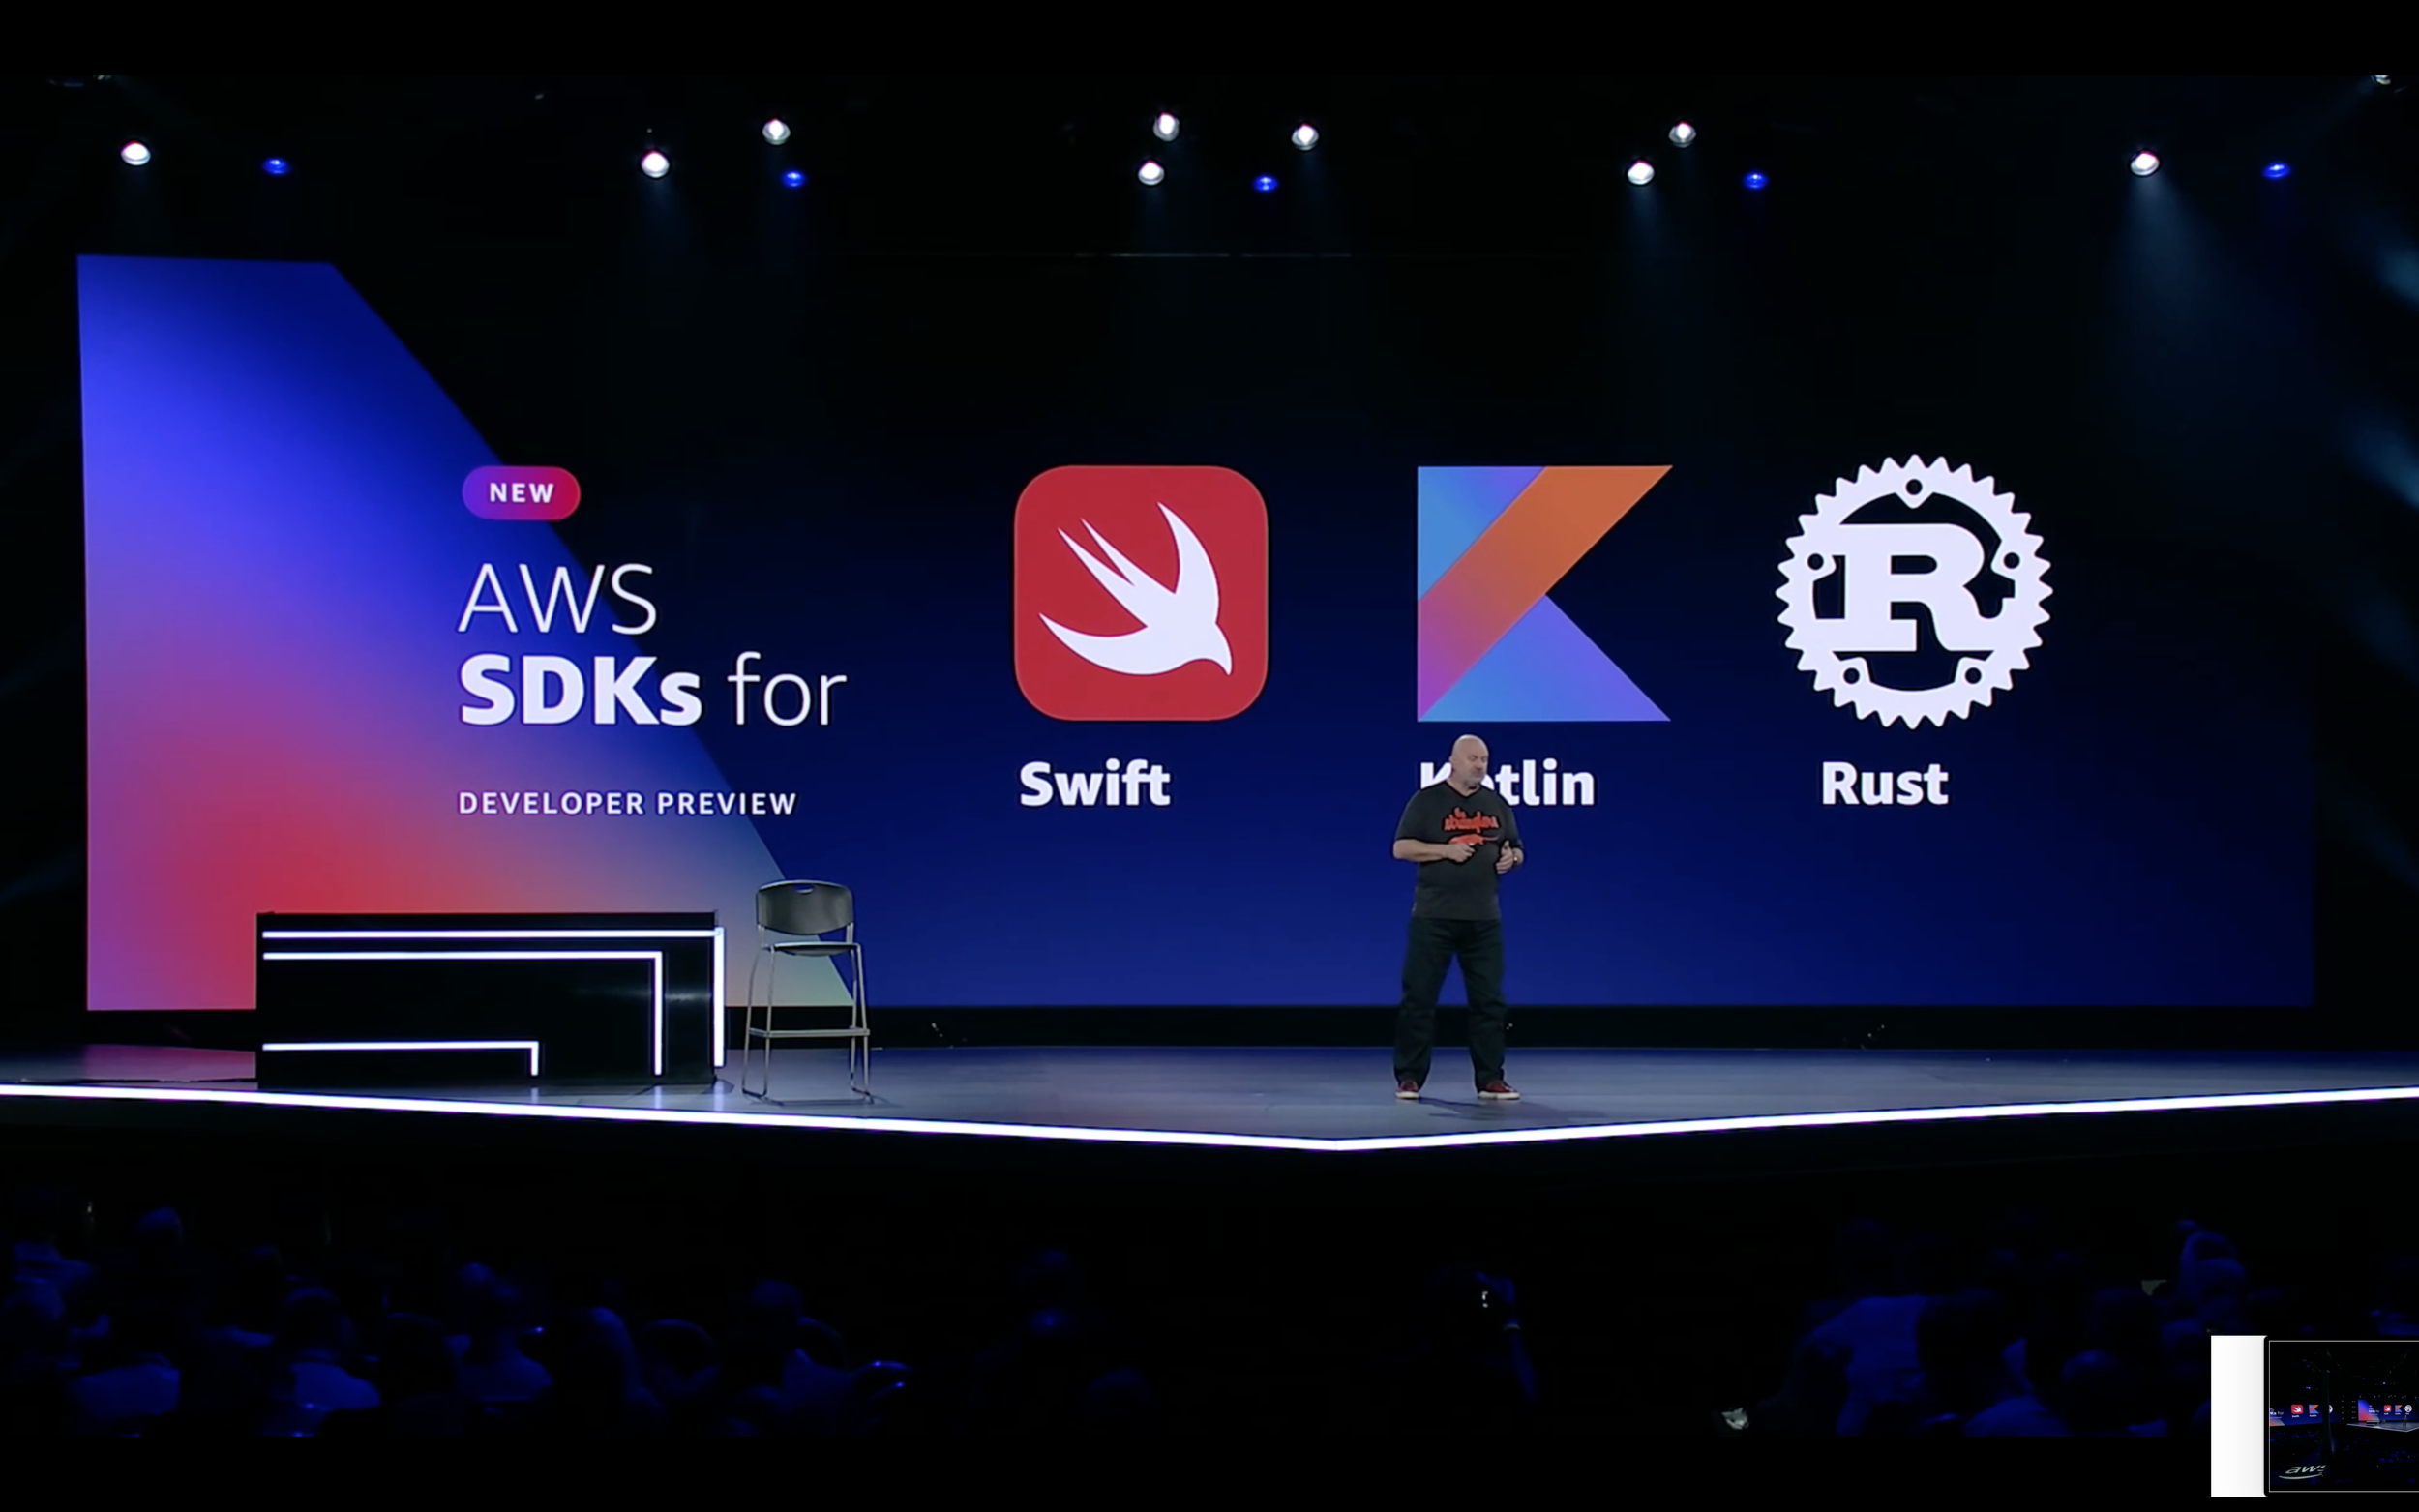 AWS SDKs for Swift, Kotlin and Rust